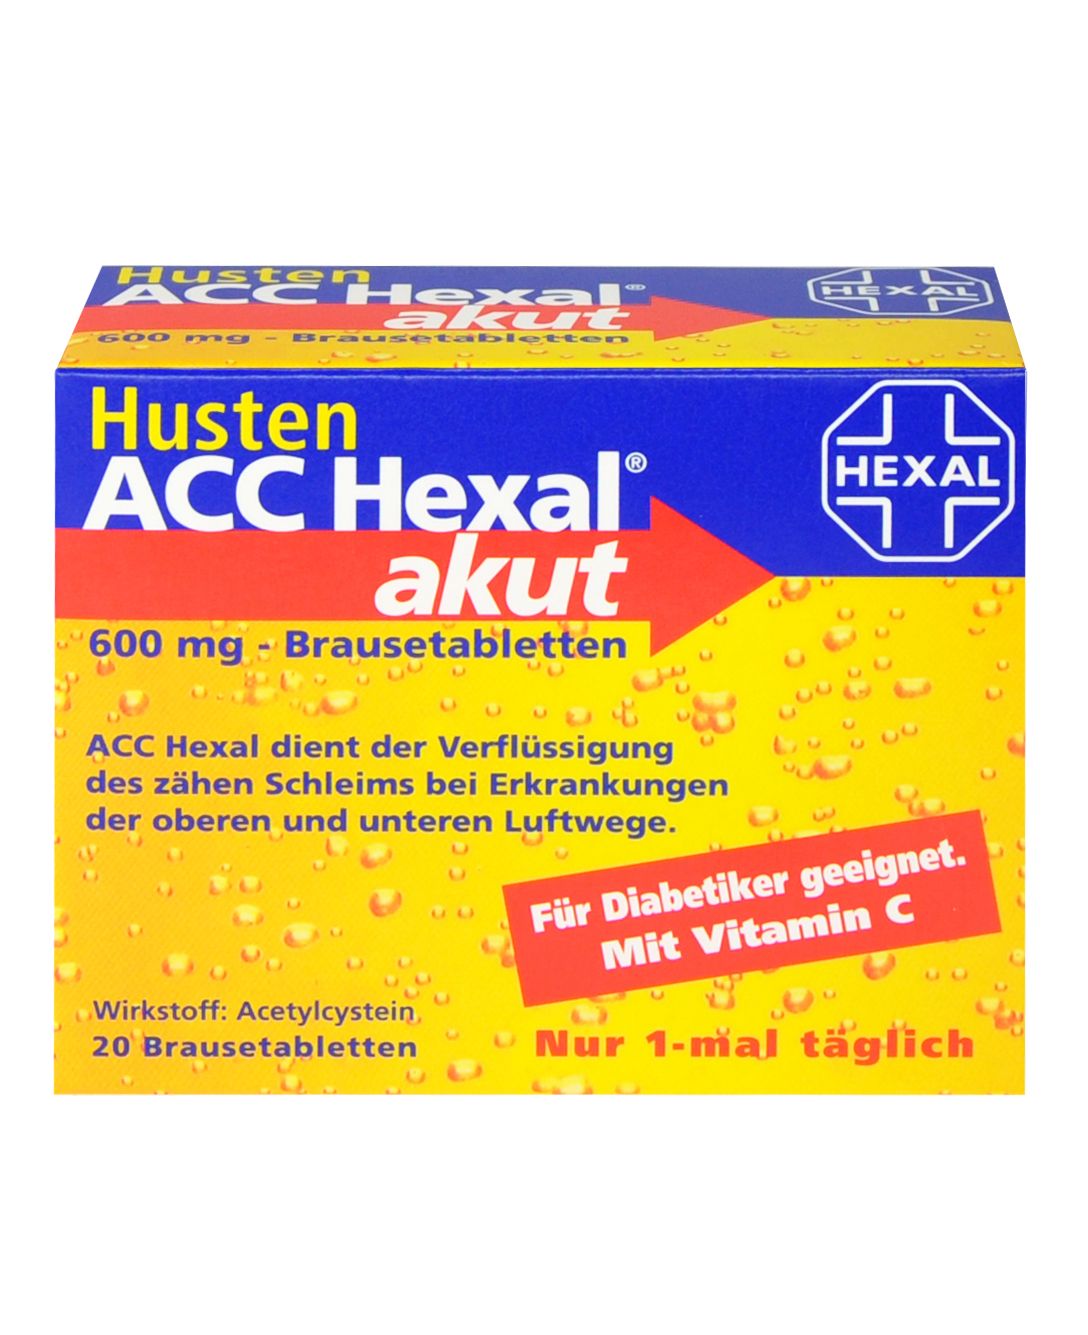 Abbildung Husten ACC Hexal akut 600 mg - Brausetabletten